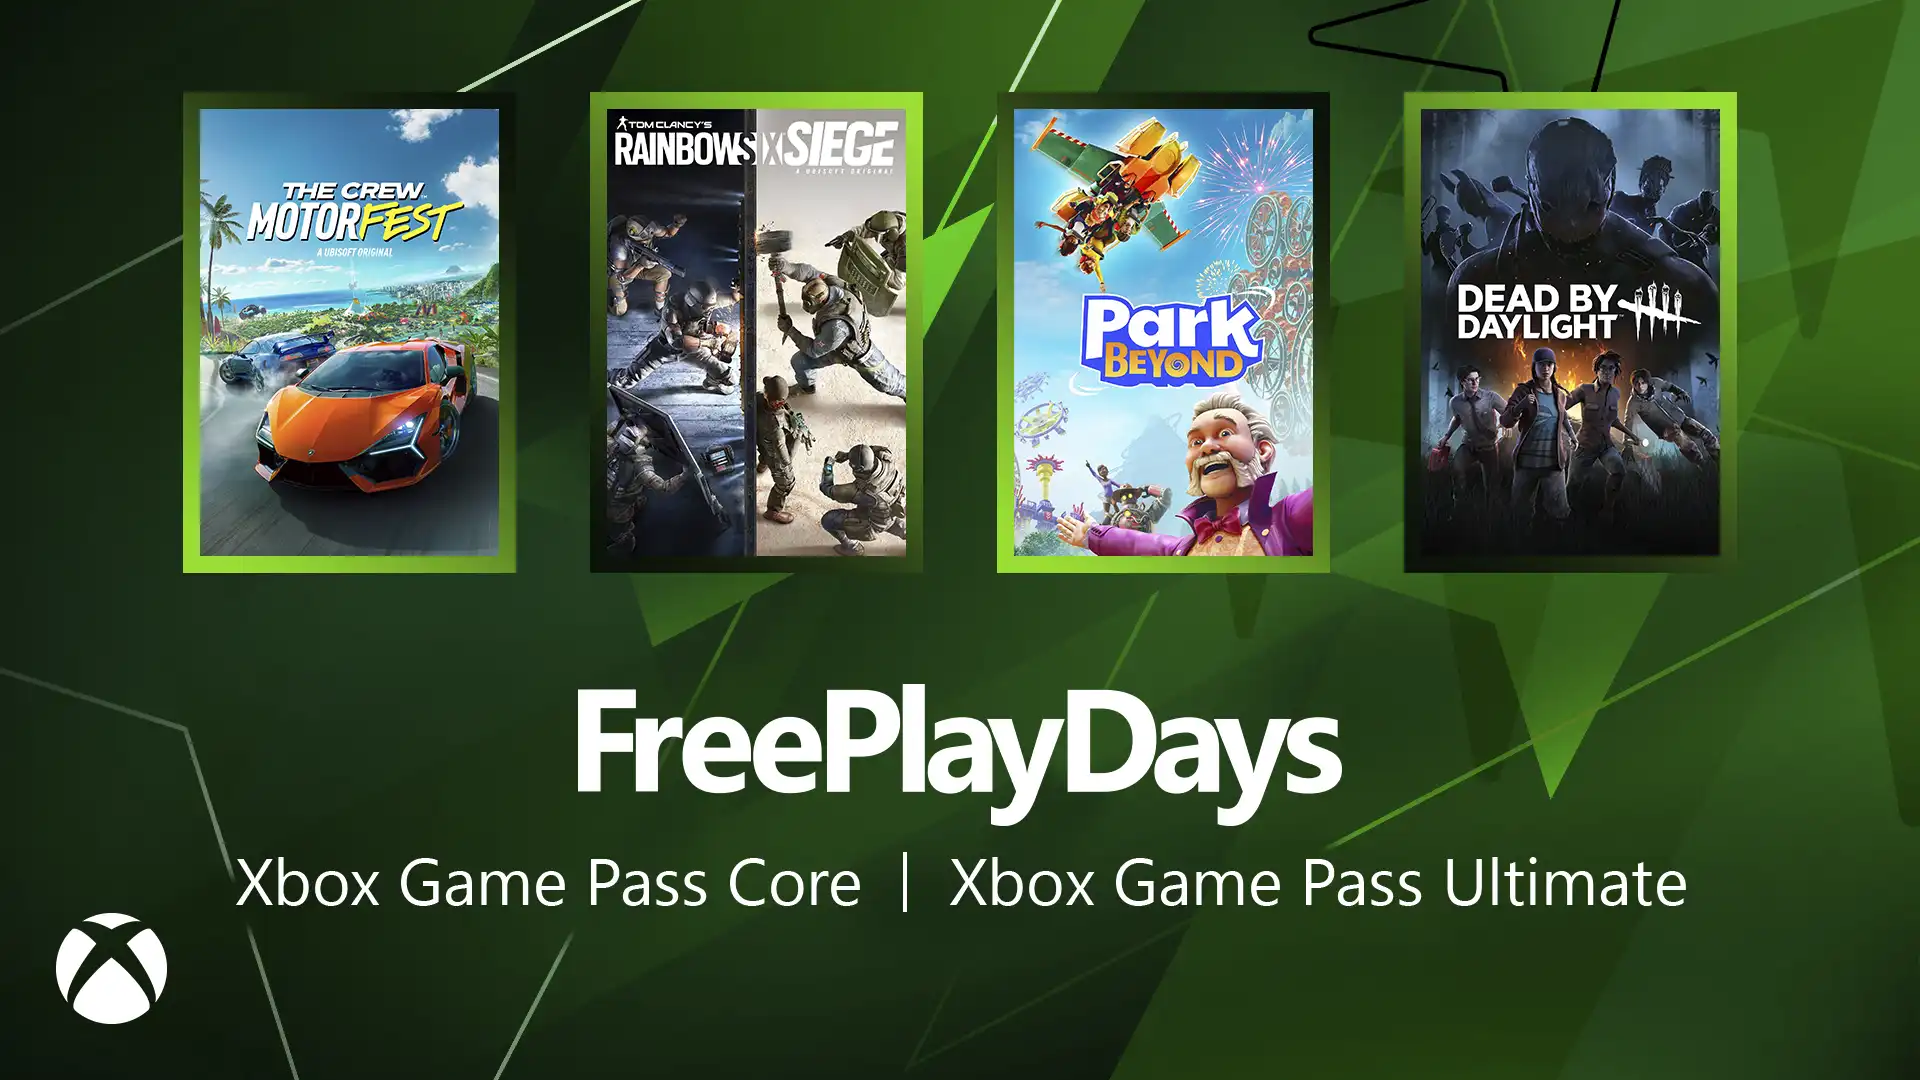 Бесплатные выходные на Xbox Game Pass - скорость, стратегия, веселье и выживание!